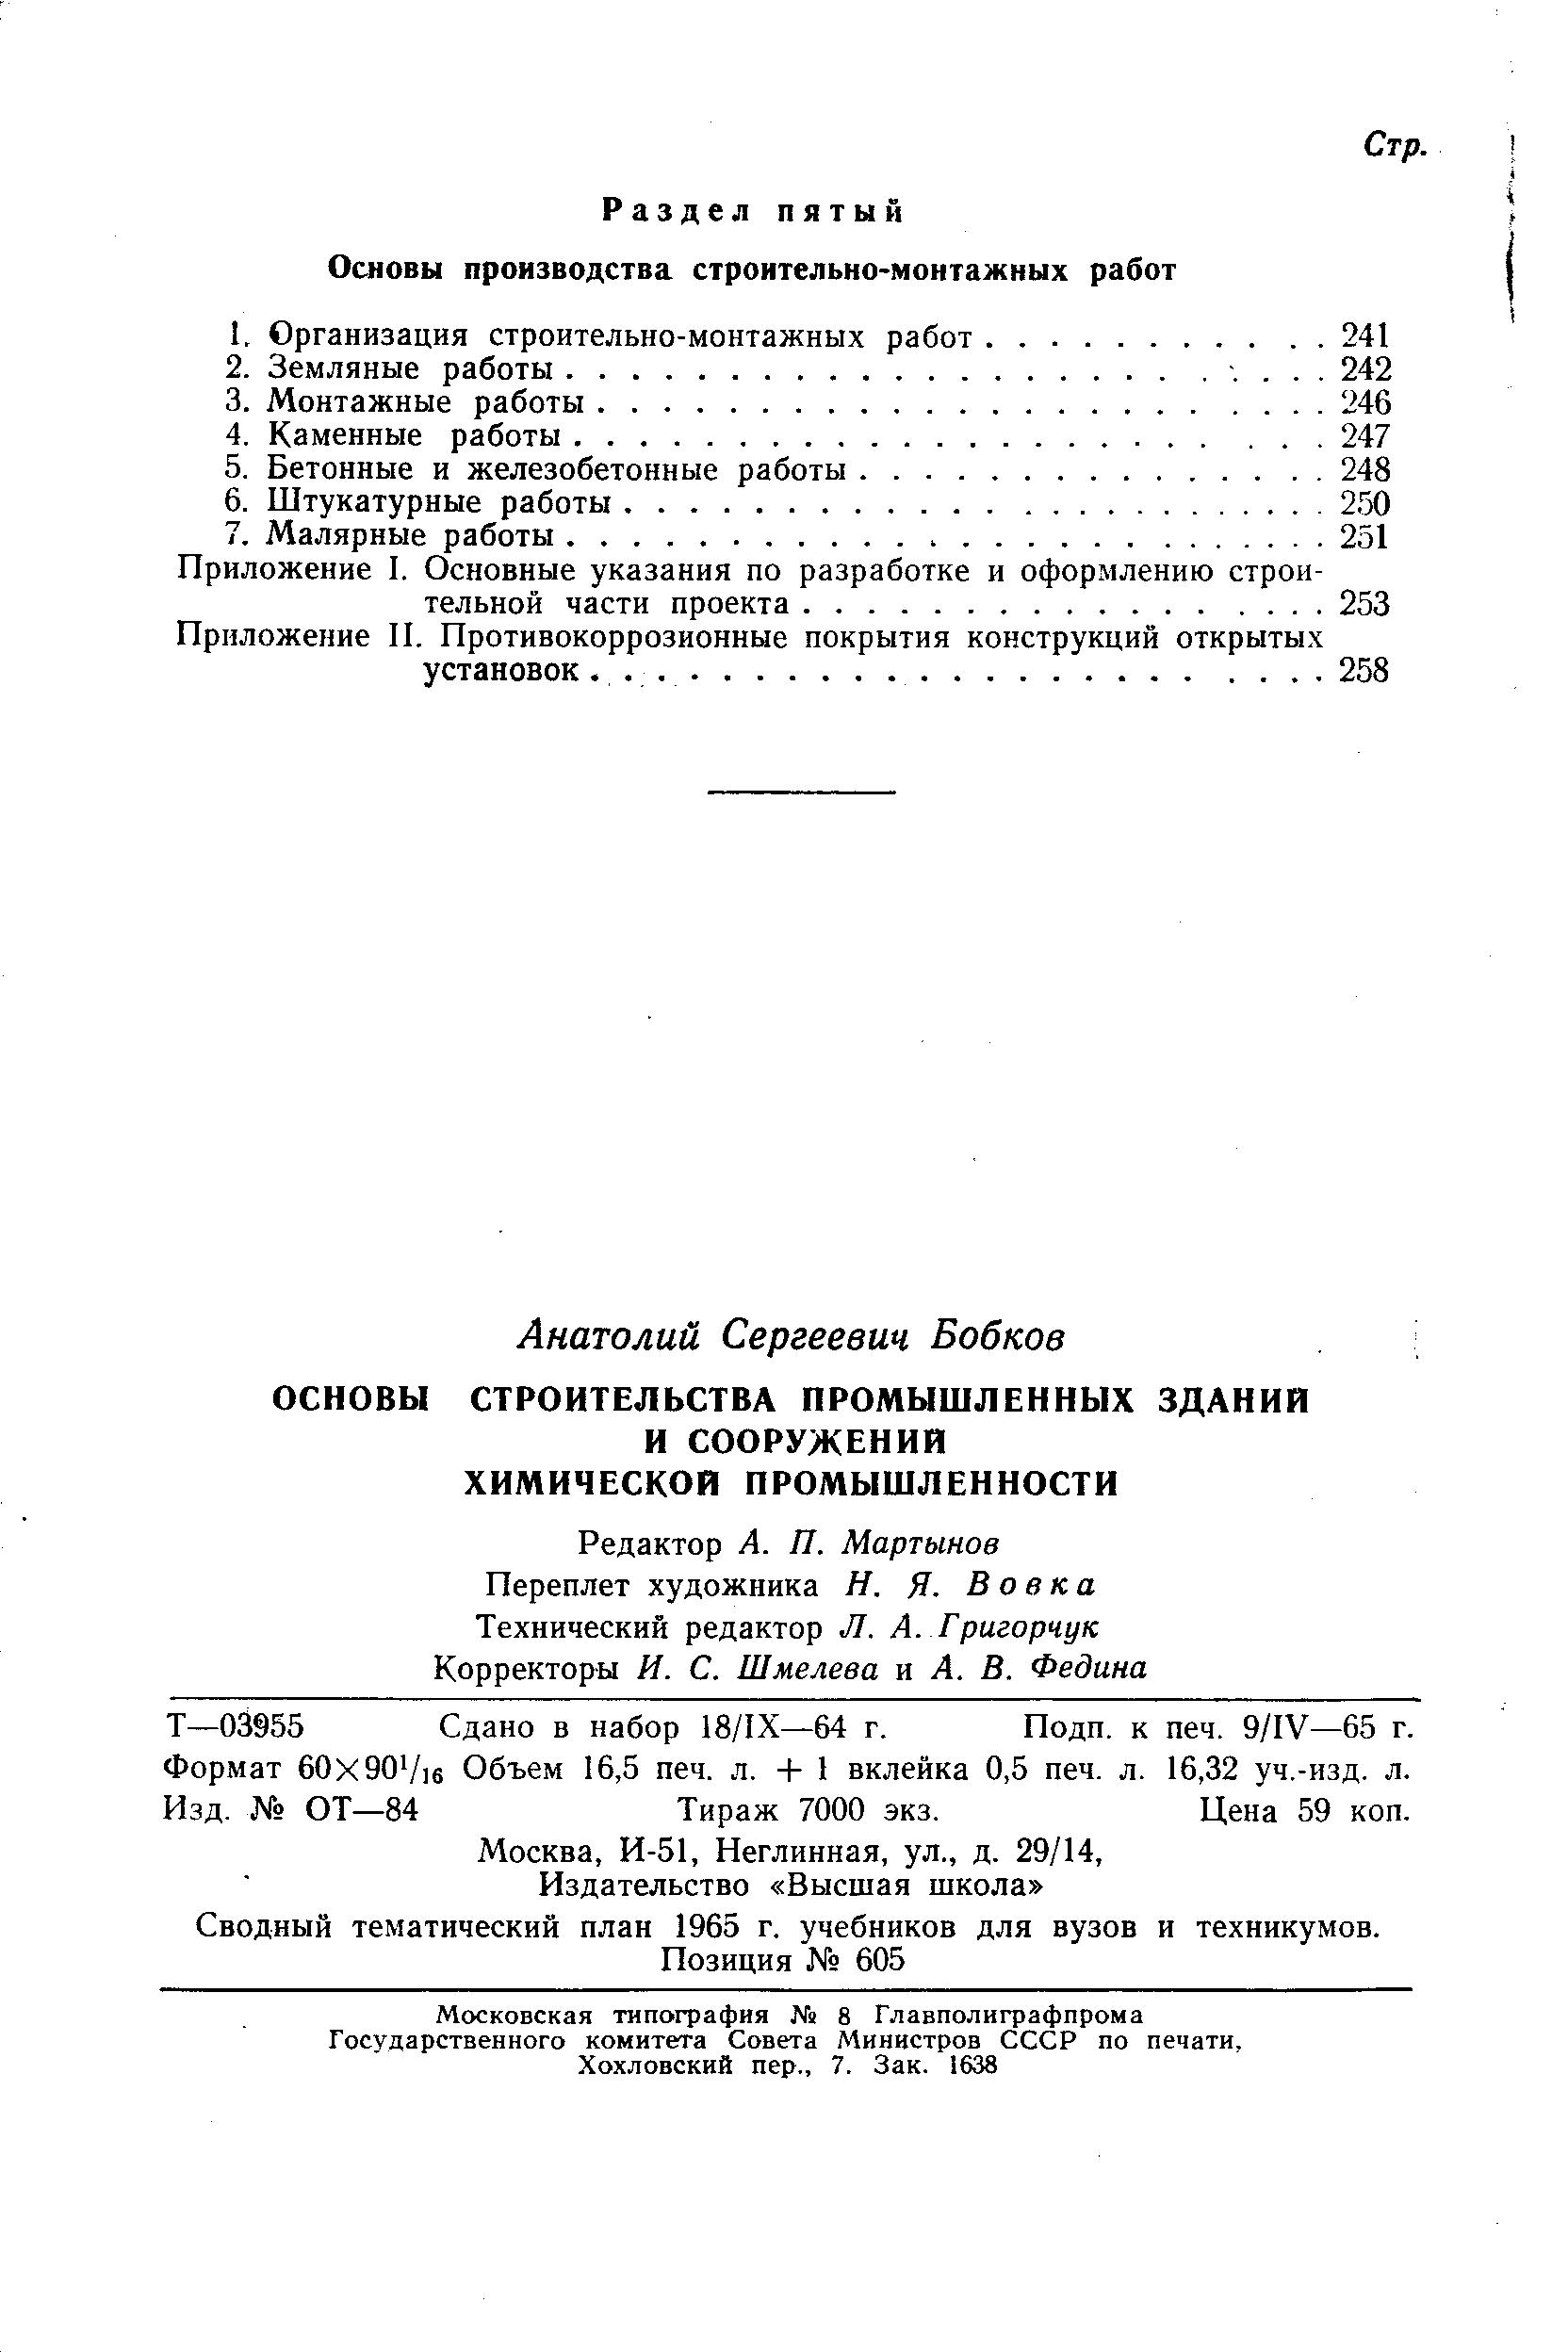 Сводный тематический план 1965 г. учебников для вузов и техникумов.